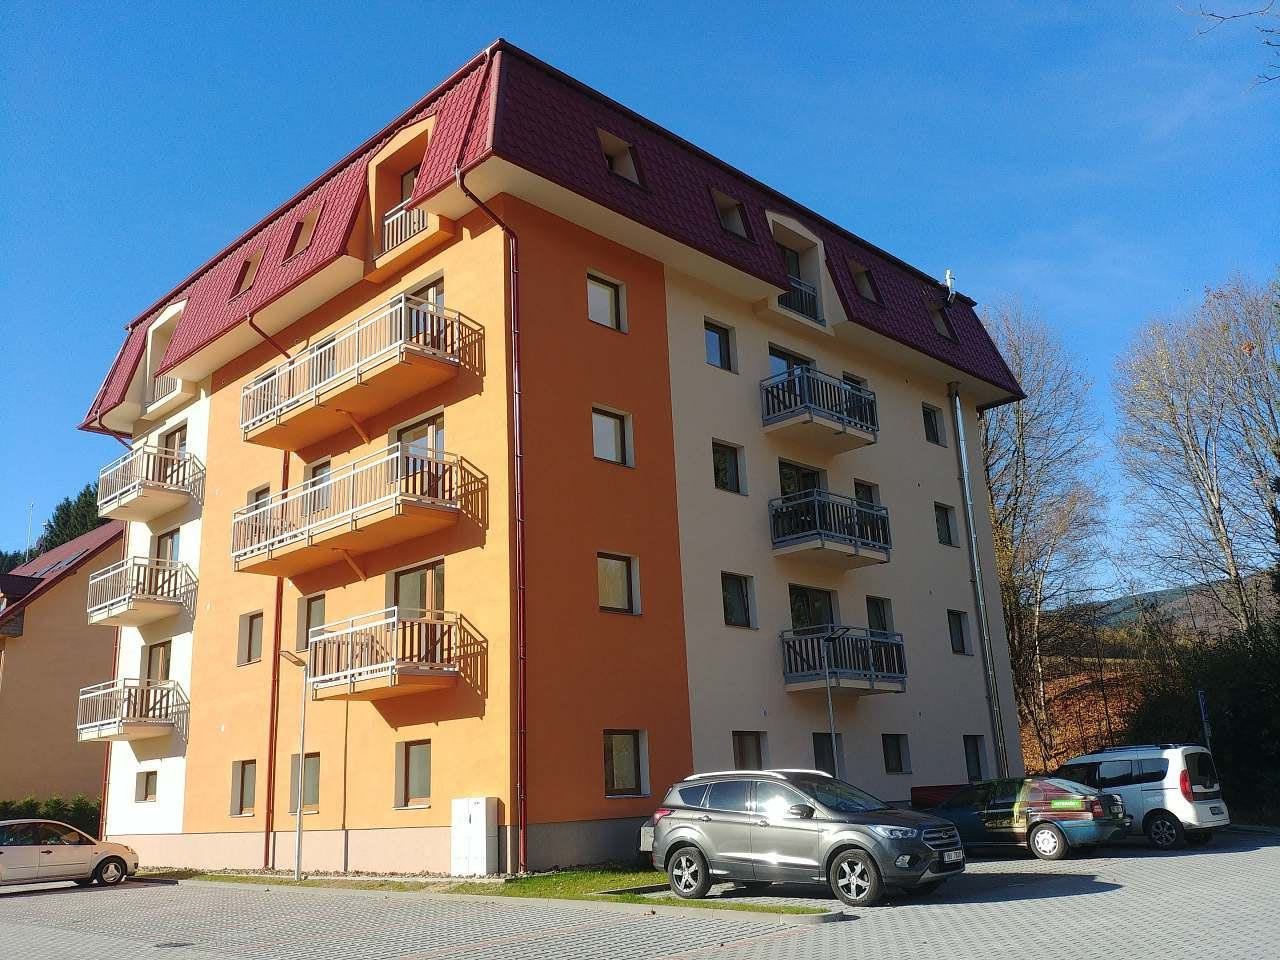 Apartament Masaryk Horní Lipová (apartament la etajul 3)